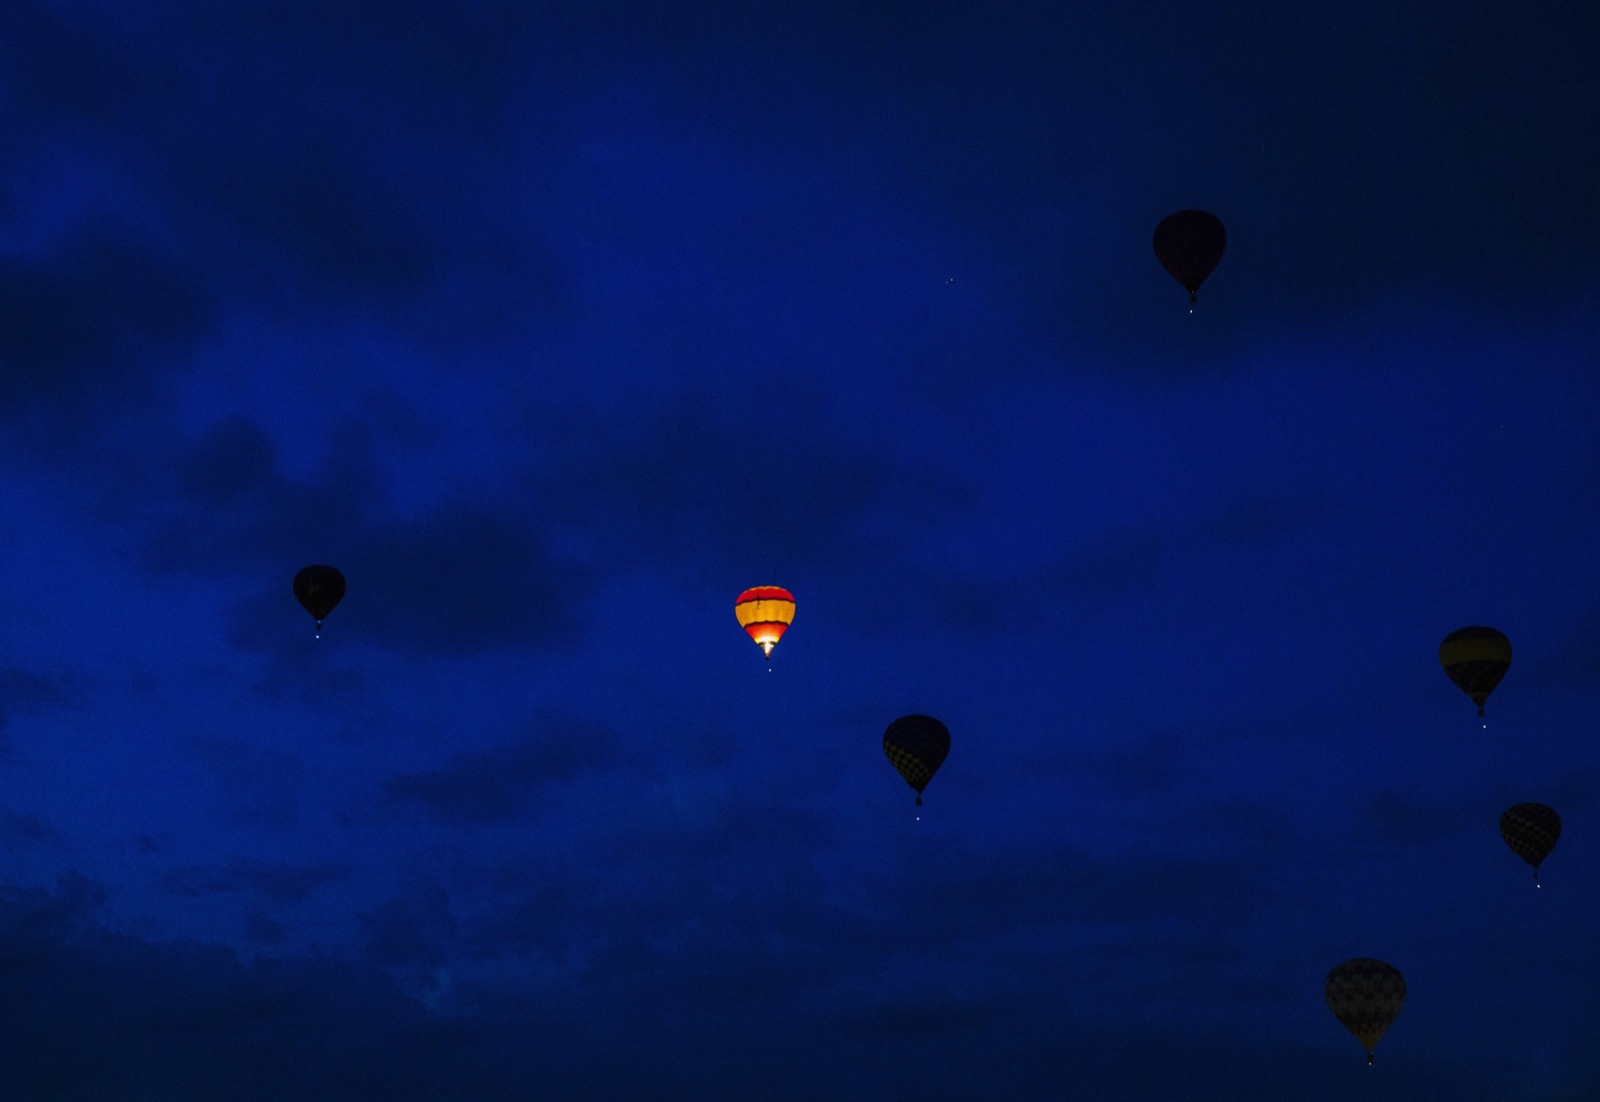 Khoảnh khắc chiếc khí cầu được đốt lửa để bay lên, khiến nó phát sáng trong đêm, trong lúc những khí cầu khác tắt lửa nên có màu tối đen. Ảnh chụp bởi Lucas Jackson.